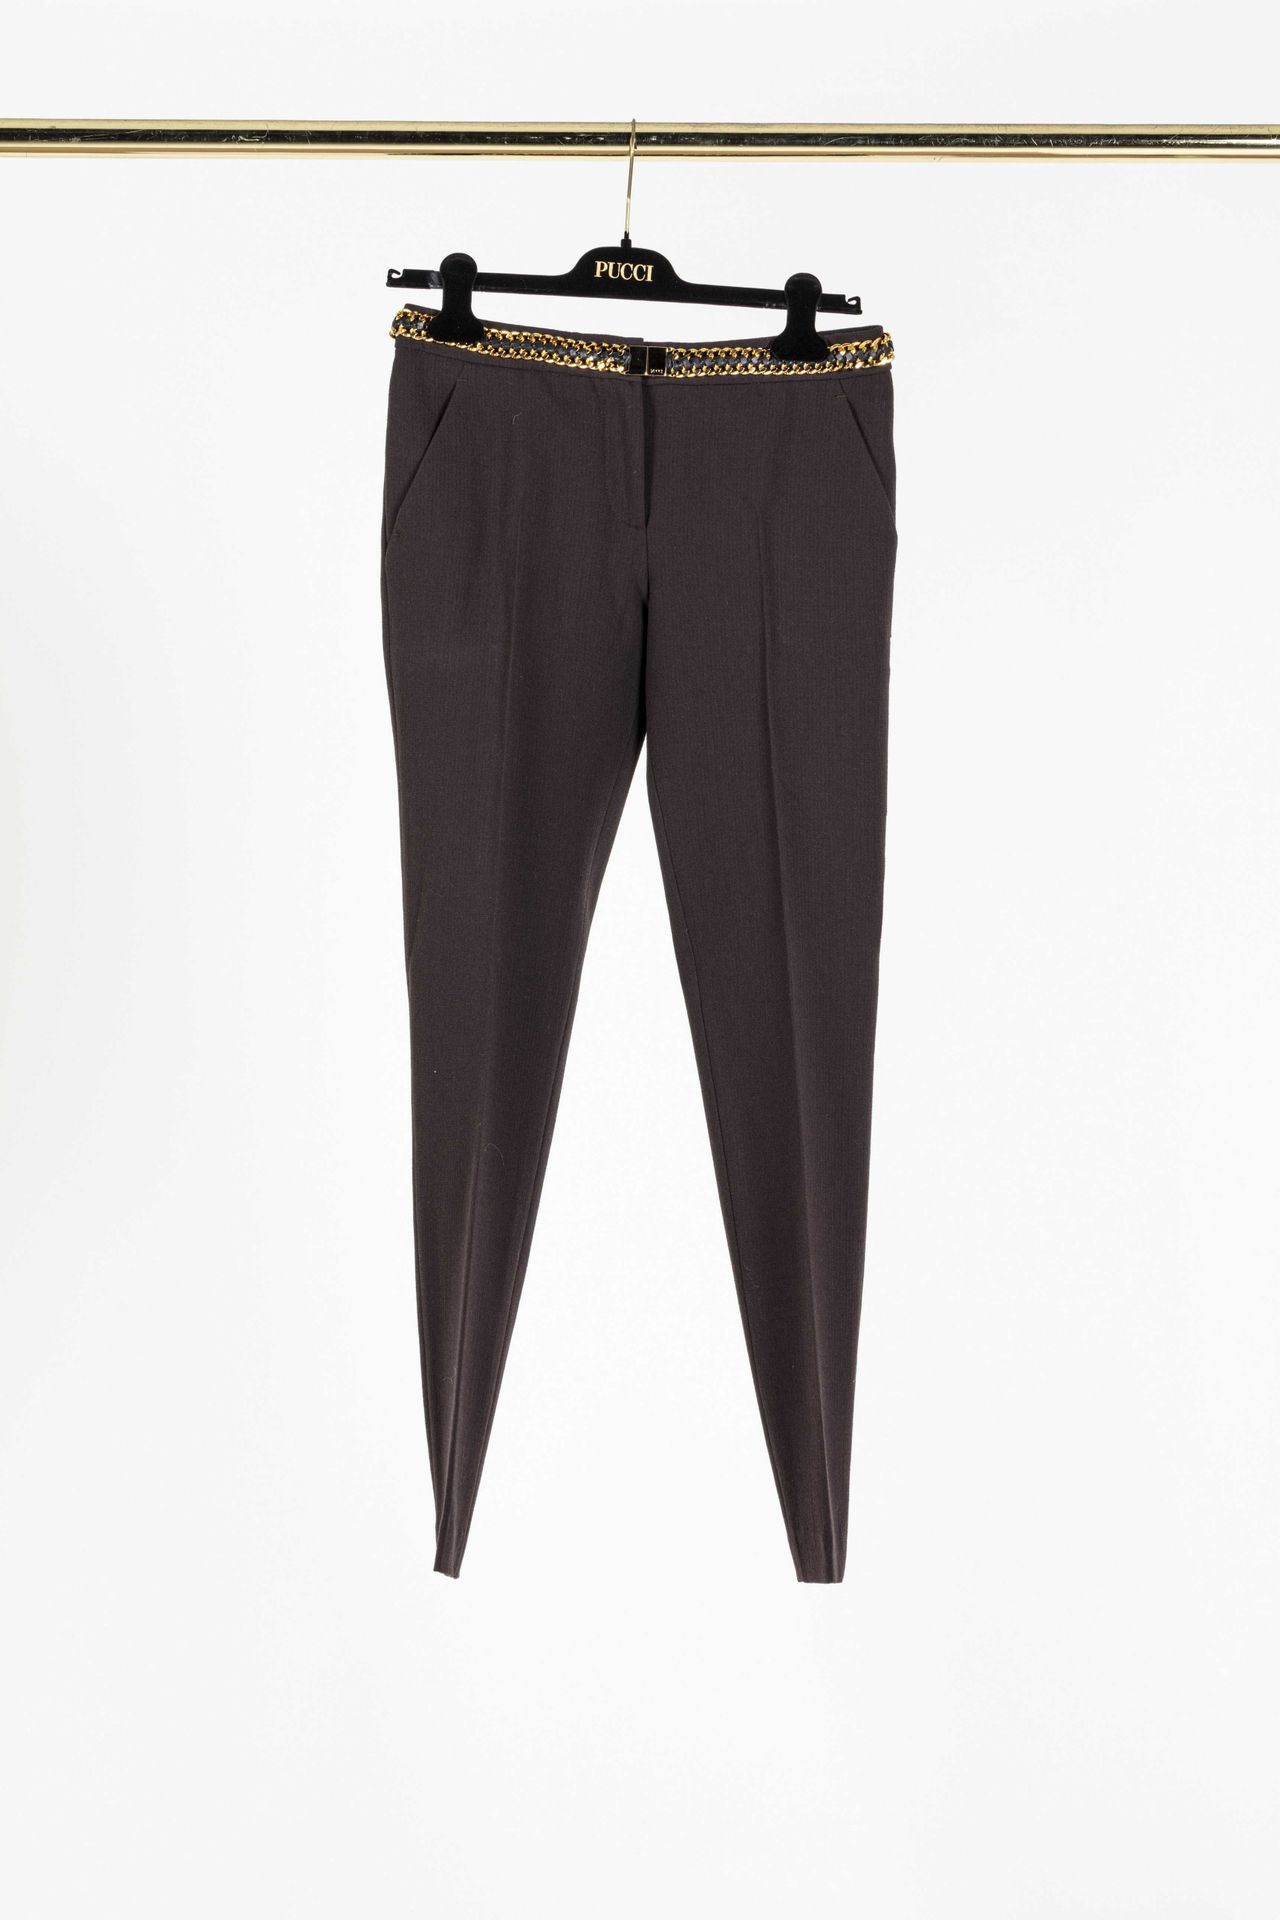 Null EMILIO PUCCI: pantalón recto de lana marrón y elastano, cinturón estilizado&hellip;